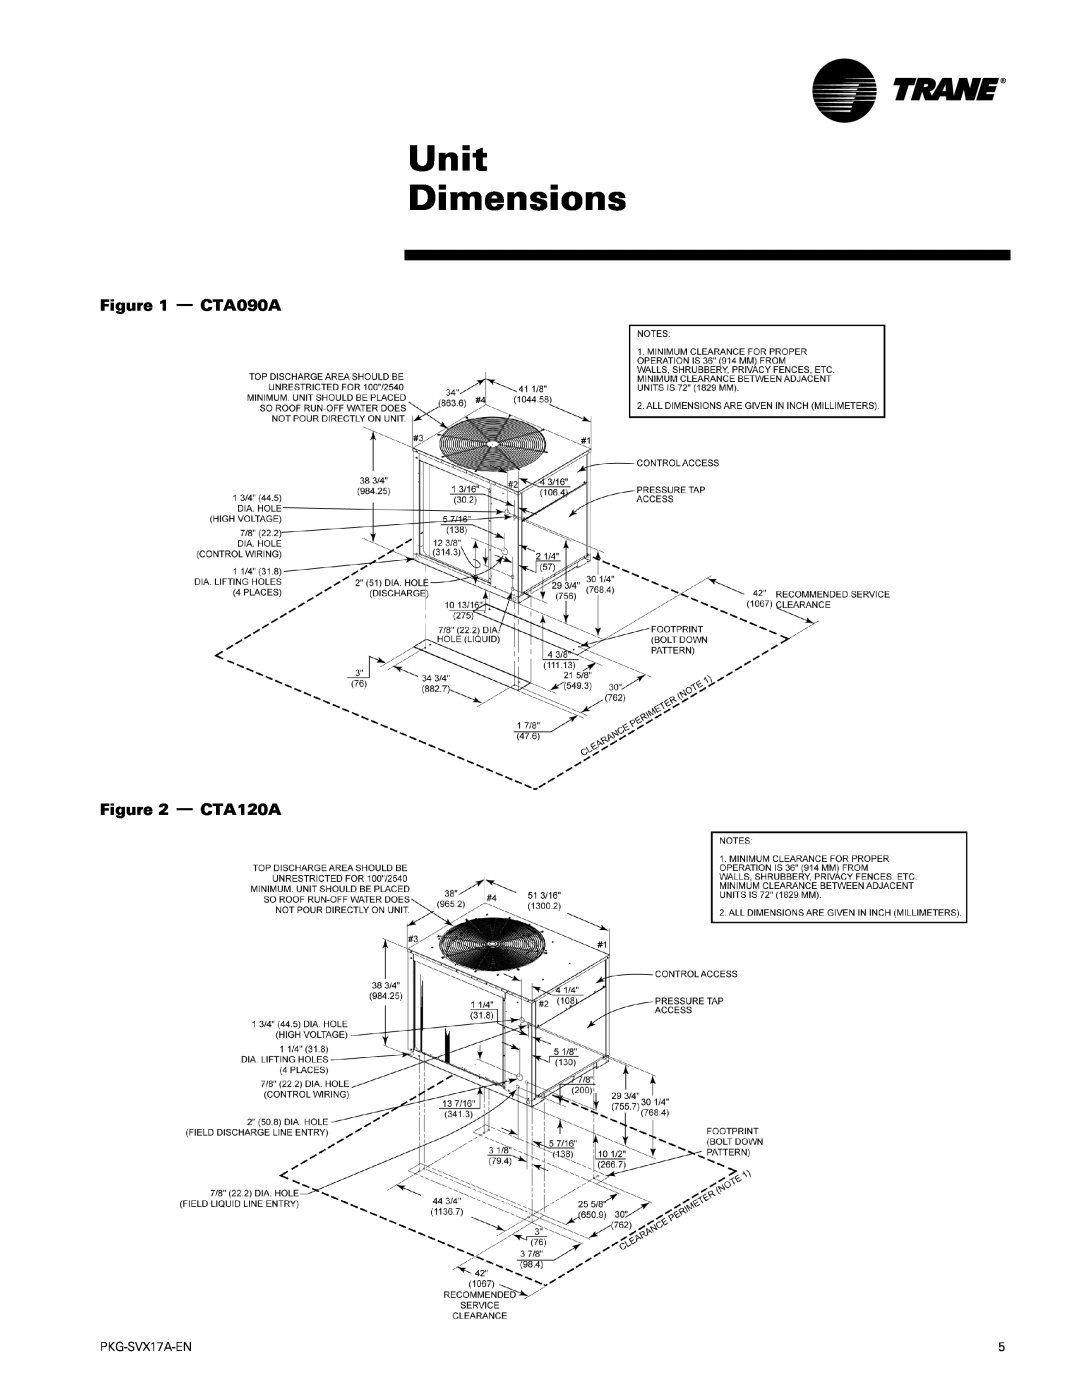 Trane PKG-SVX17A-EN manual Unit Dimensions, CTA090A - CTA120A 